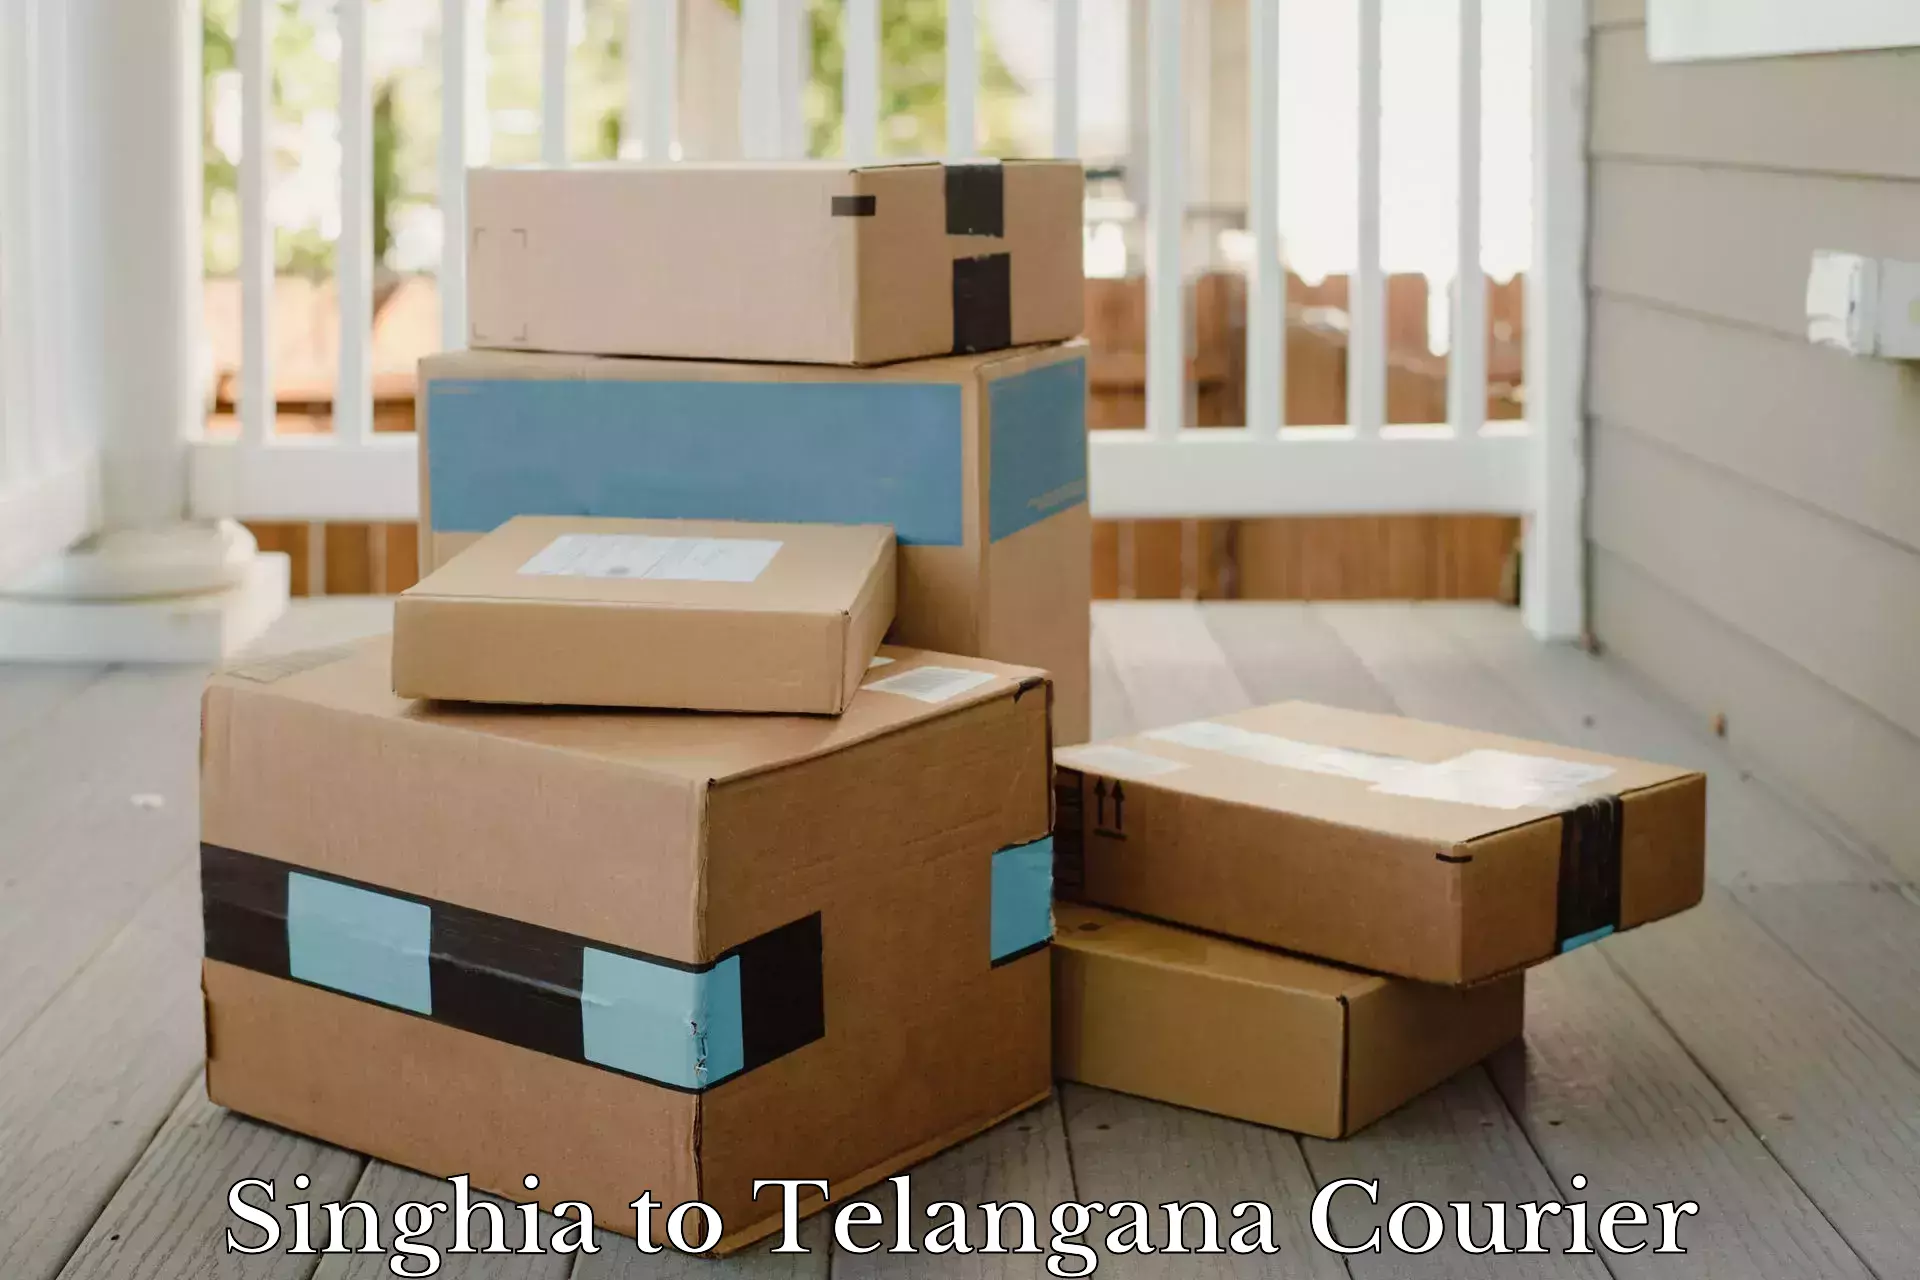 Subscription-based courier Singhia to Kothakota